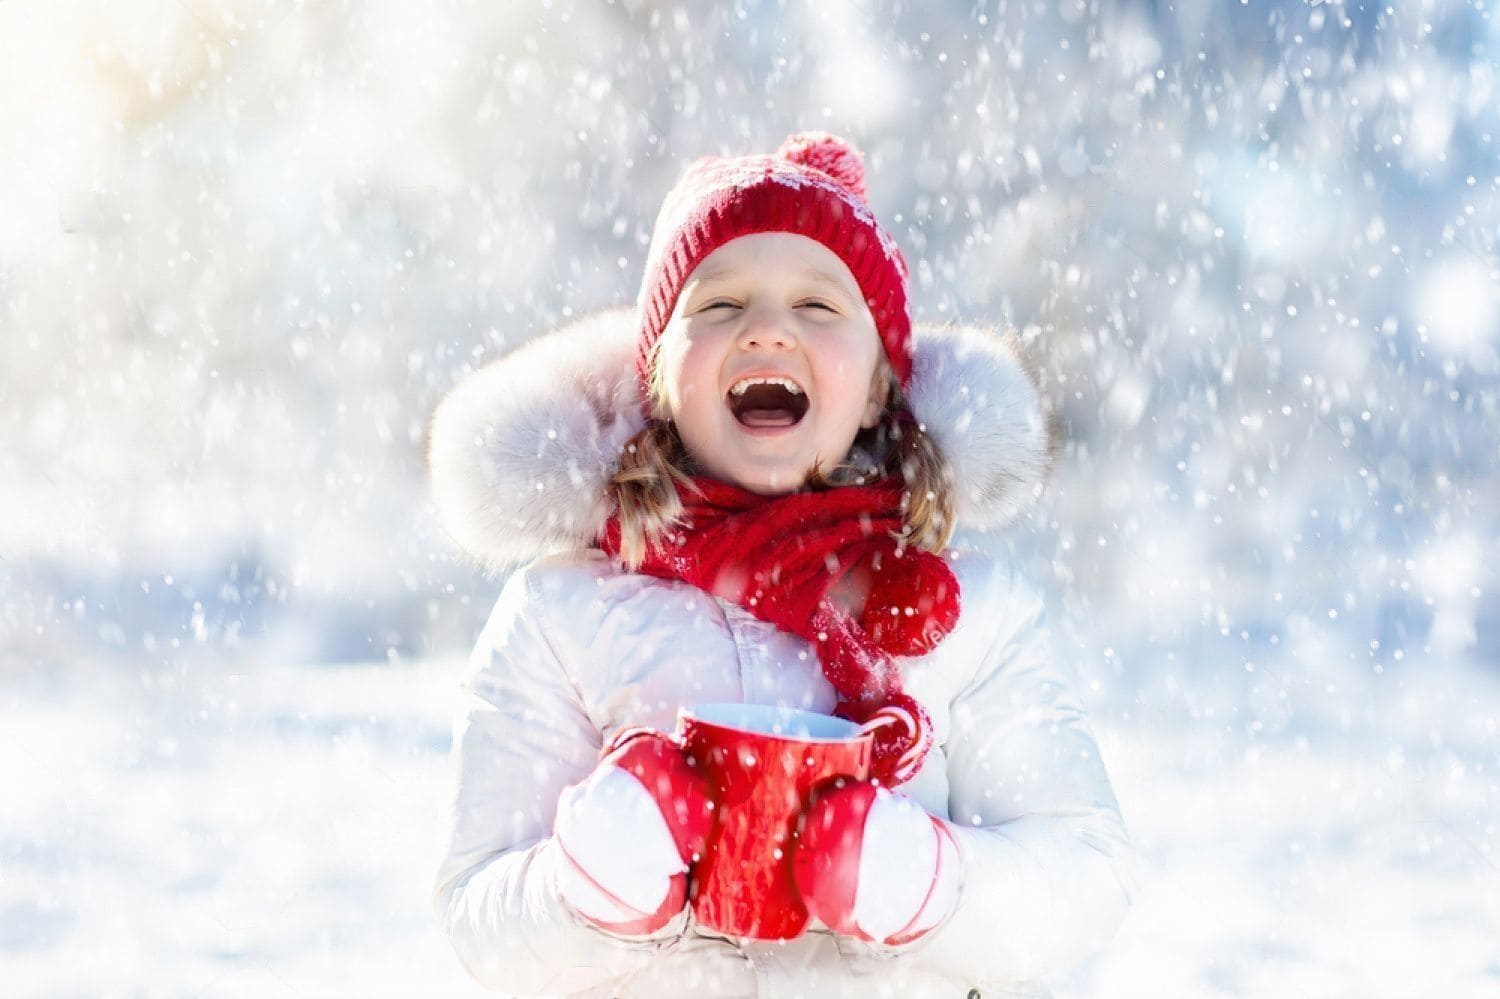 Что подарить девочке на новый год - радостная девочка в белом с красной шапкой и шарфом под снегопадом на солнце держит красную чашку